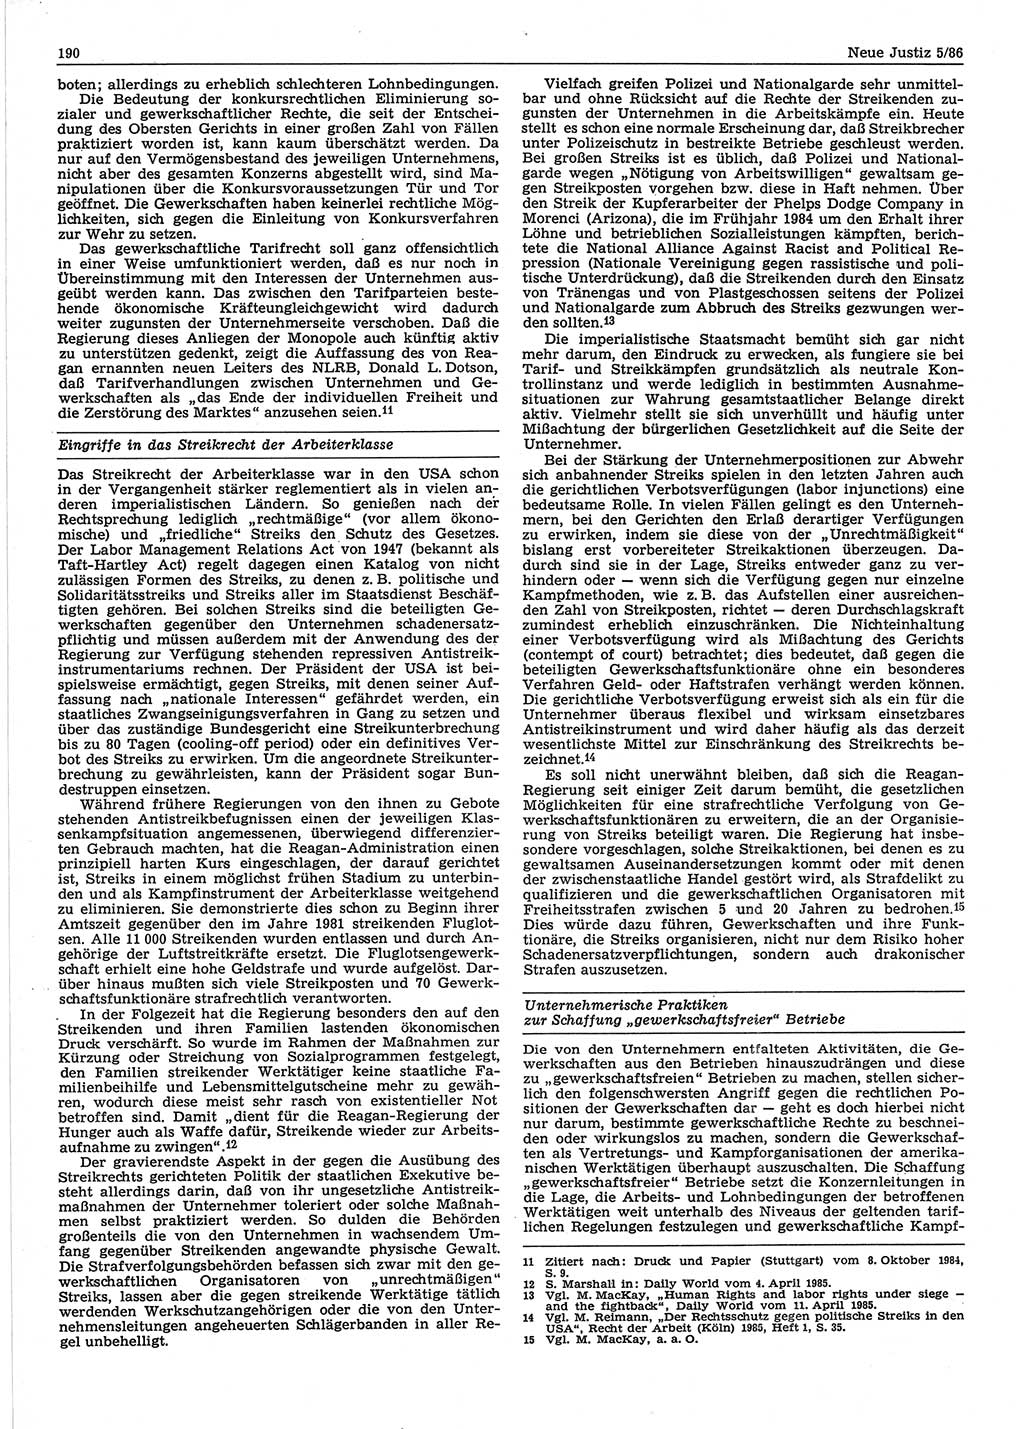 Neue Justiz (NJ), Zeitschrift für sozialistisches Recht und Gesetzlichkeit [Deutsche Demokratische Republik (DDR)], 40. Jahrgang 1986, Seite 190 (NJ DDR 1986, S. 190)